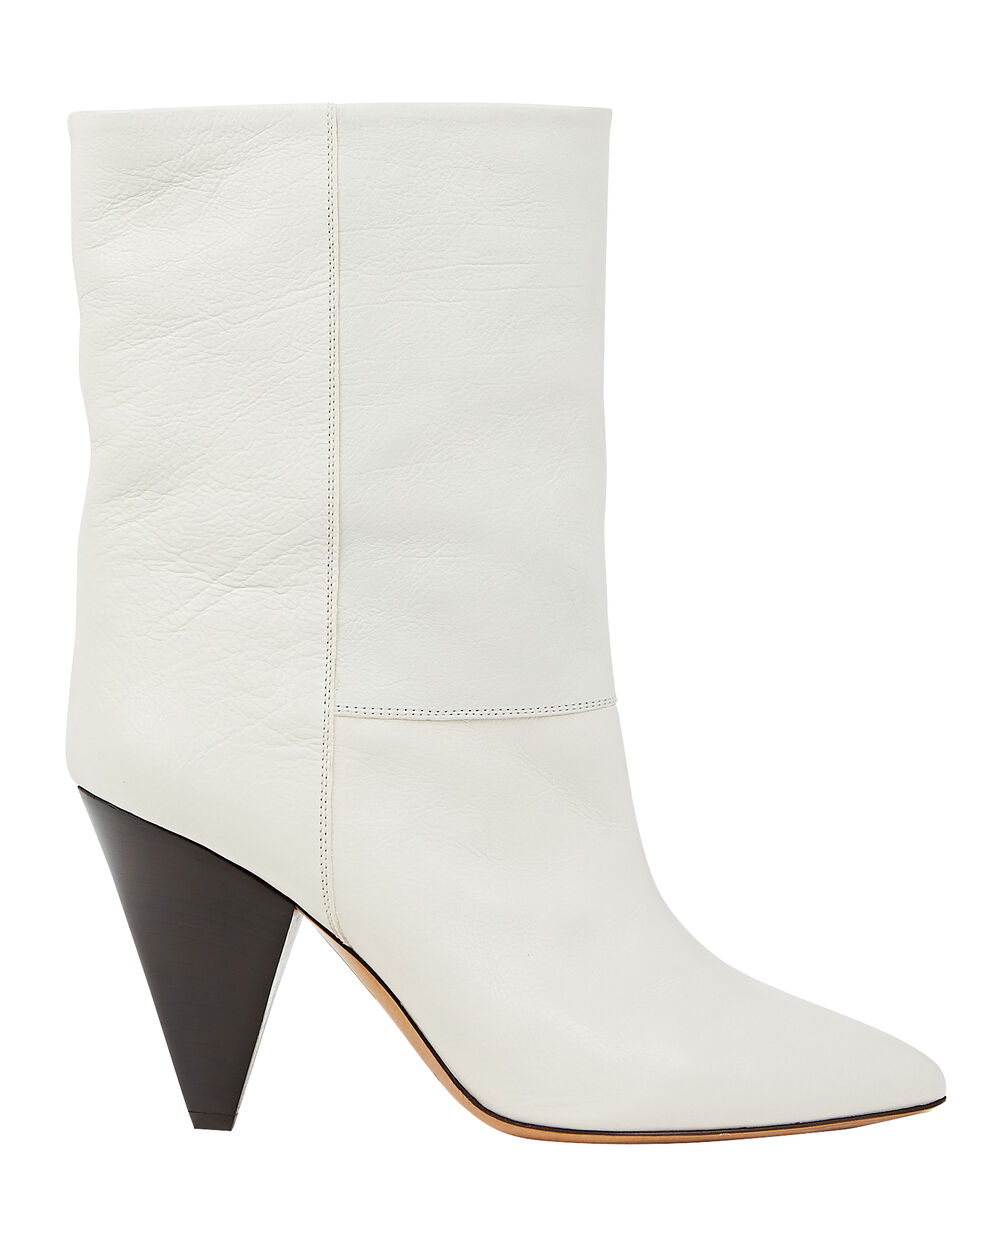 Huiswerk maken Opnieuw schieten uitbreiden Isabel Marant Locky Leather Ankle Boots In White | INTERMIX®